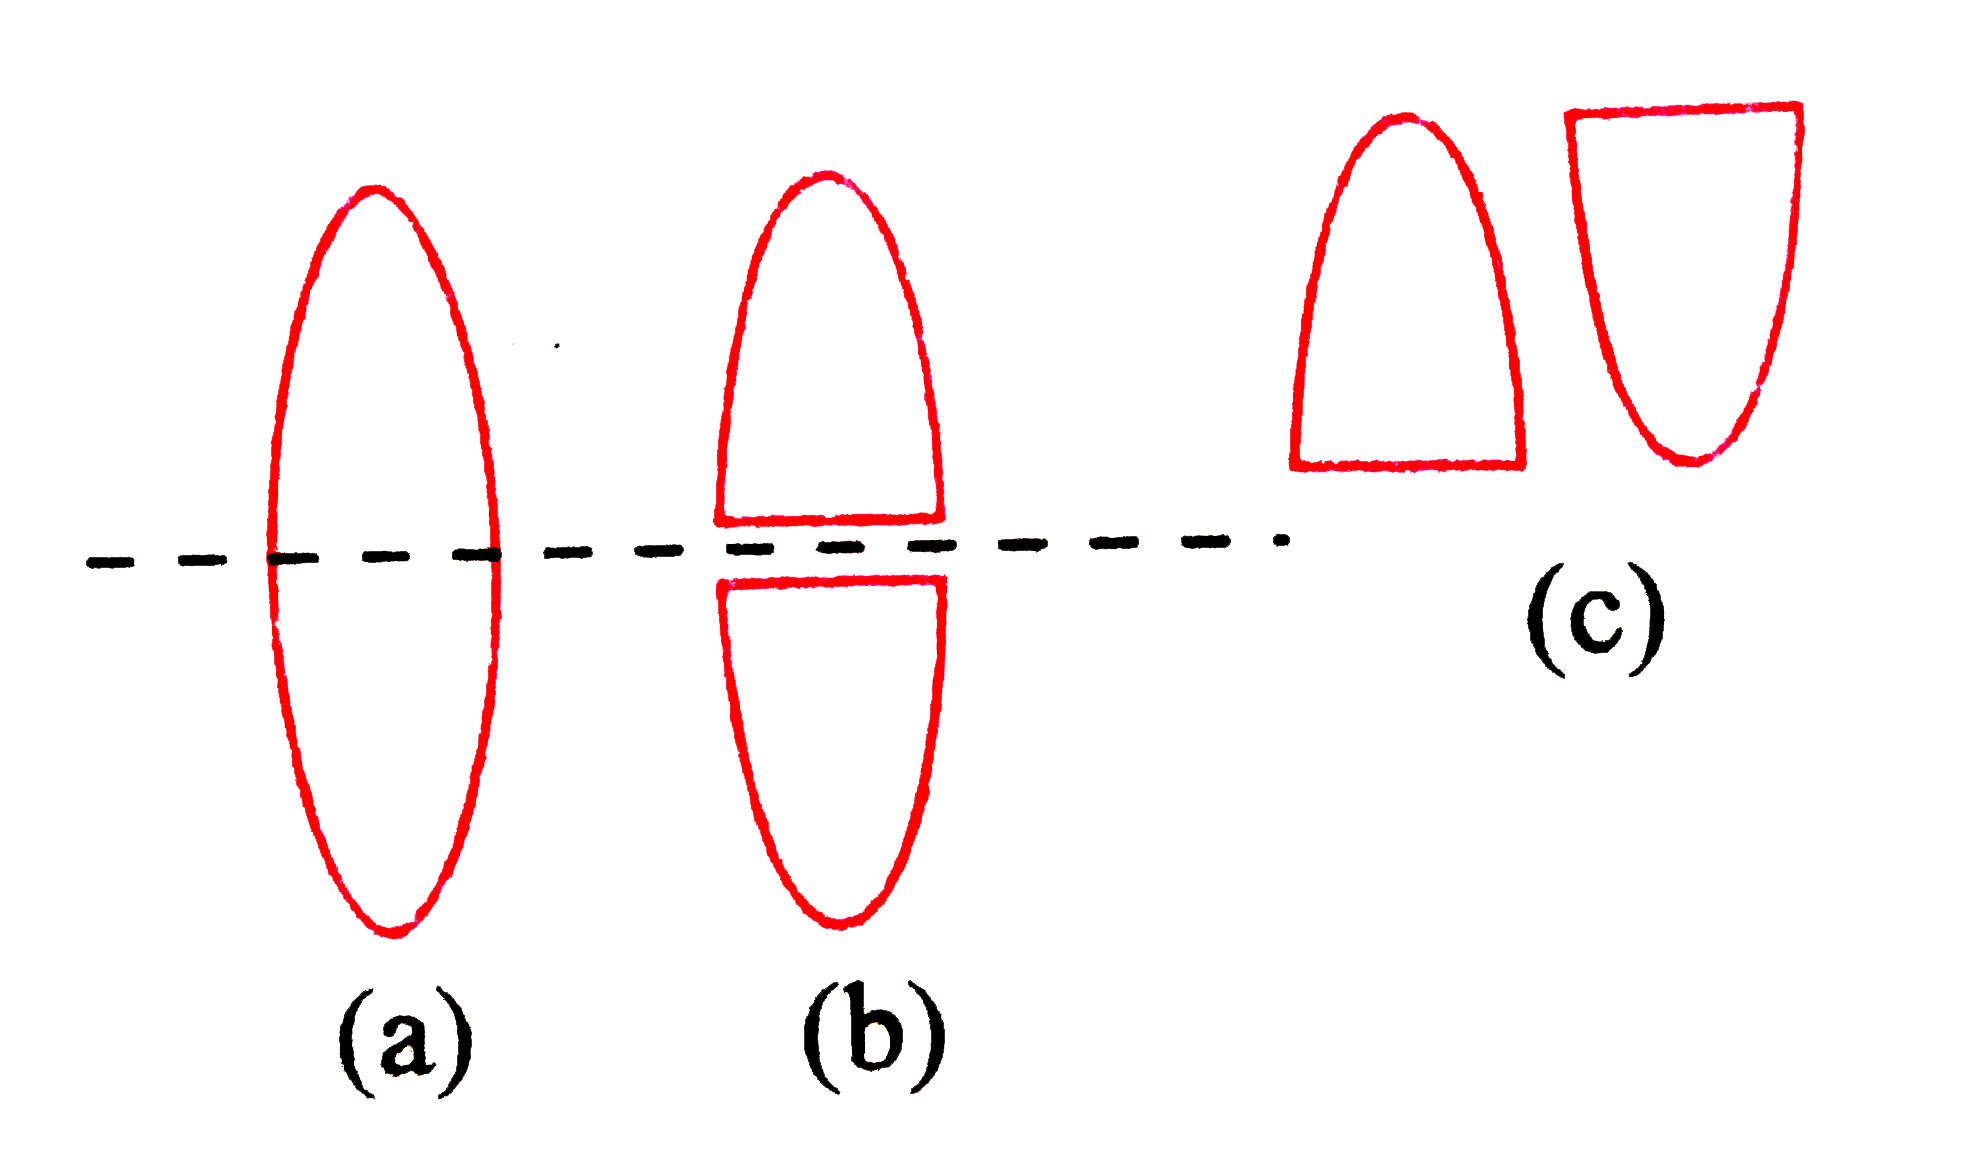 एक समरूप उभयोत्तल लेंस को चित्र (b) की भाँति दो भागों में विभक्त करके चित्र (c) की भाँति संयोजित किया जाता है। यदि मूल लेंस की फोकस-दूरी f हो, तो संयुक्त लेंस की फोकस दूरी कितनी होगी?